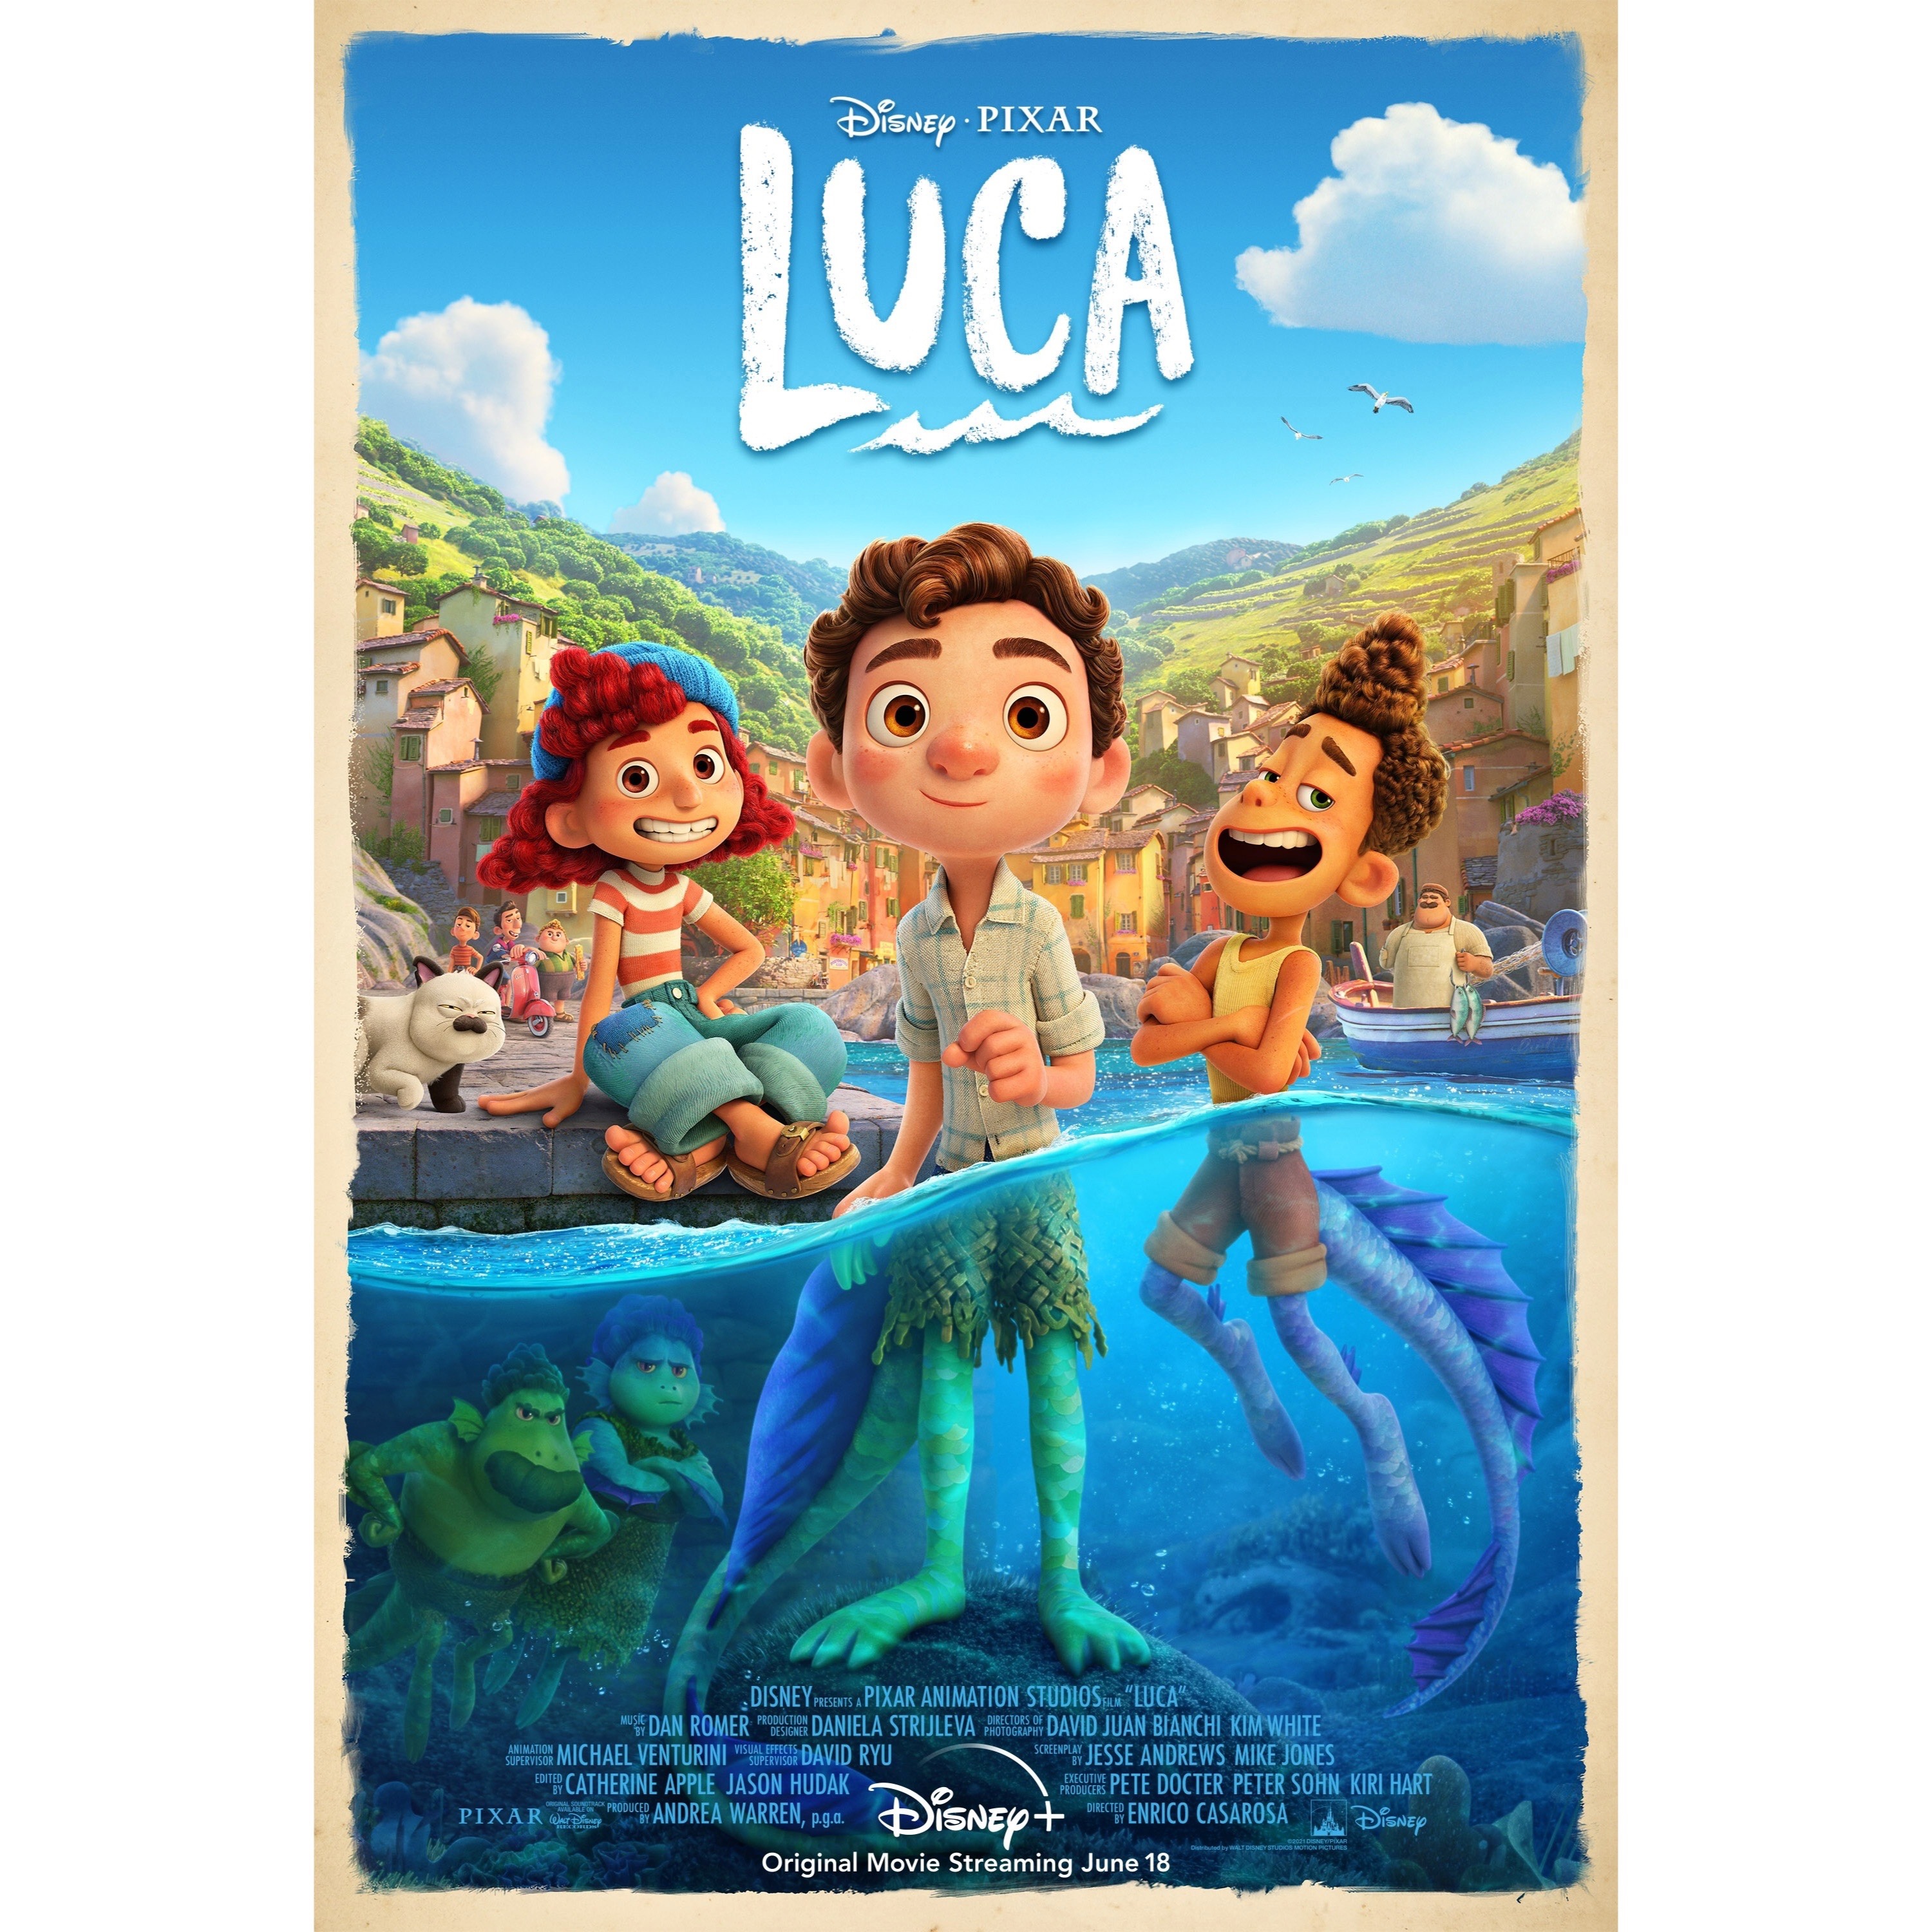 Disney Pixar’s Luca